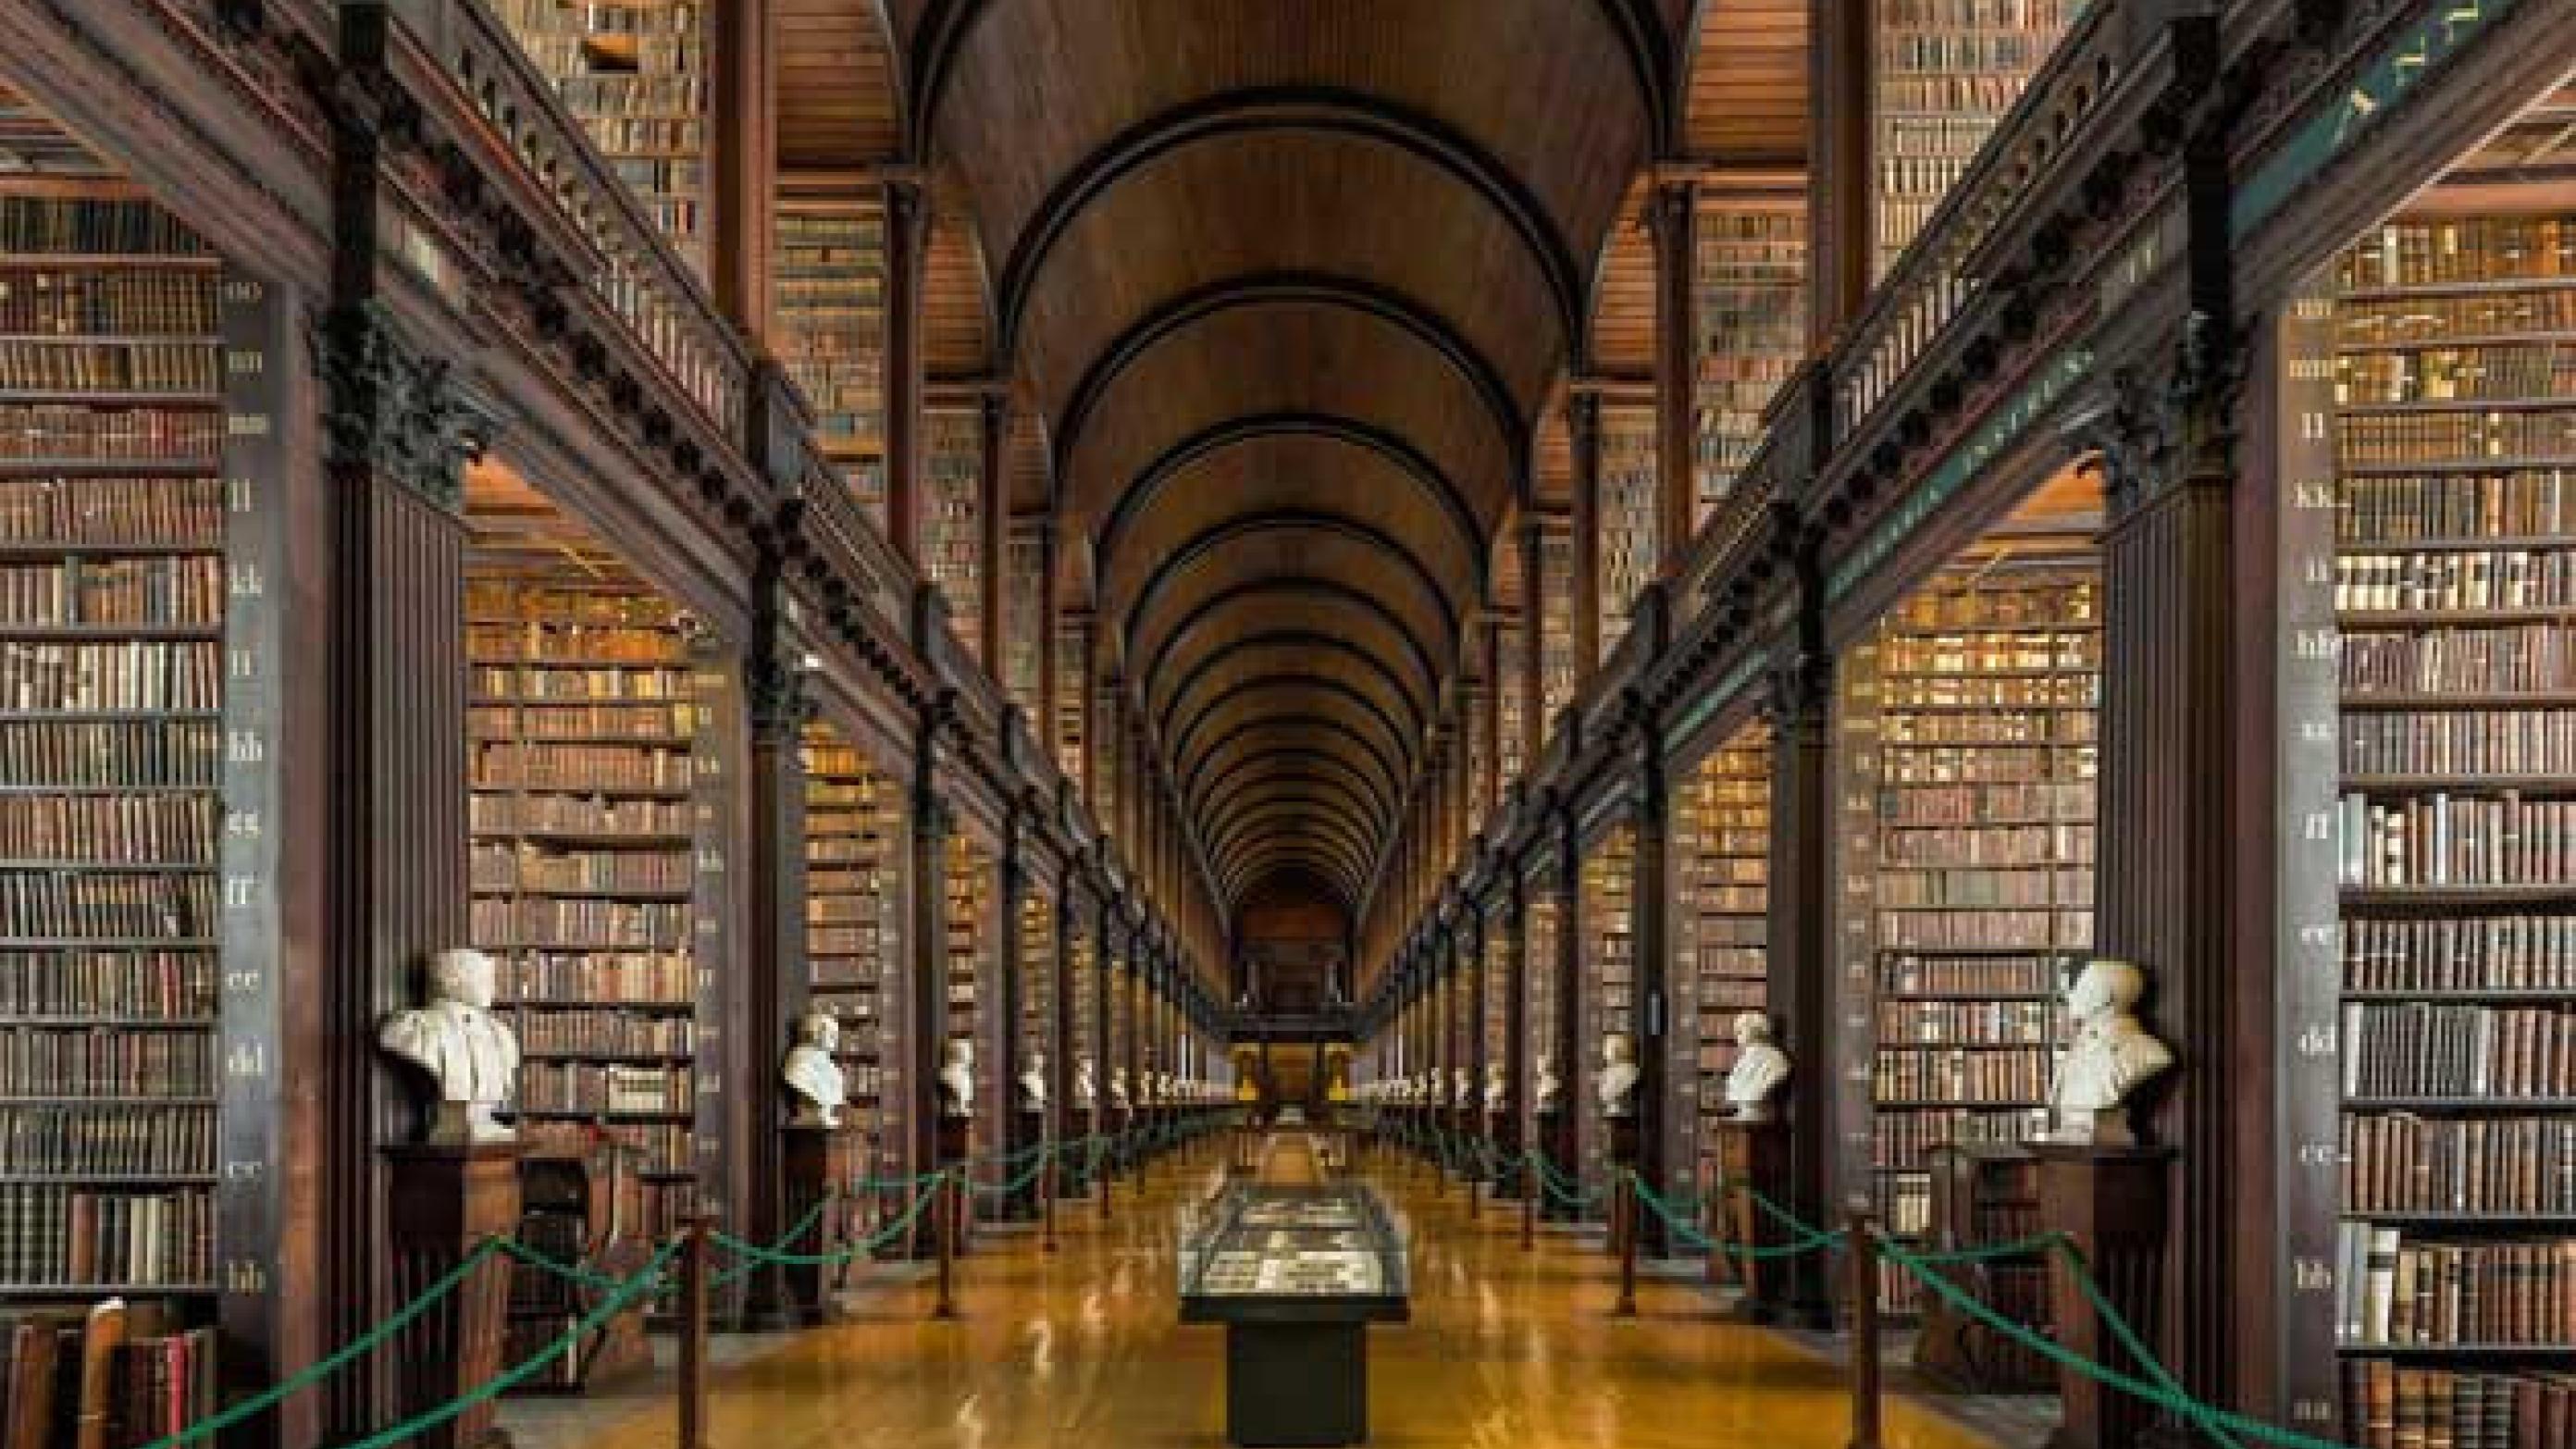 The Library of Trinity College Dublin er bibliotek for Trinity College og University of Dublin i Irland. Samlingen består af omkring 7 millioner genstande. David Iliff. License: CC BY-SA 3.0